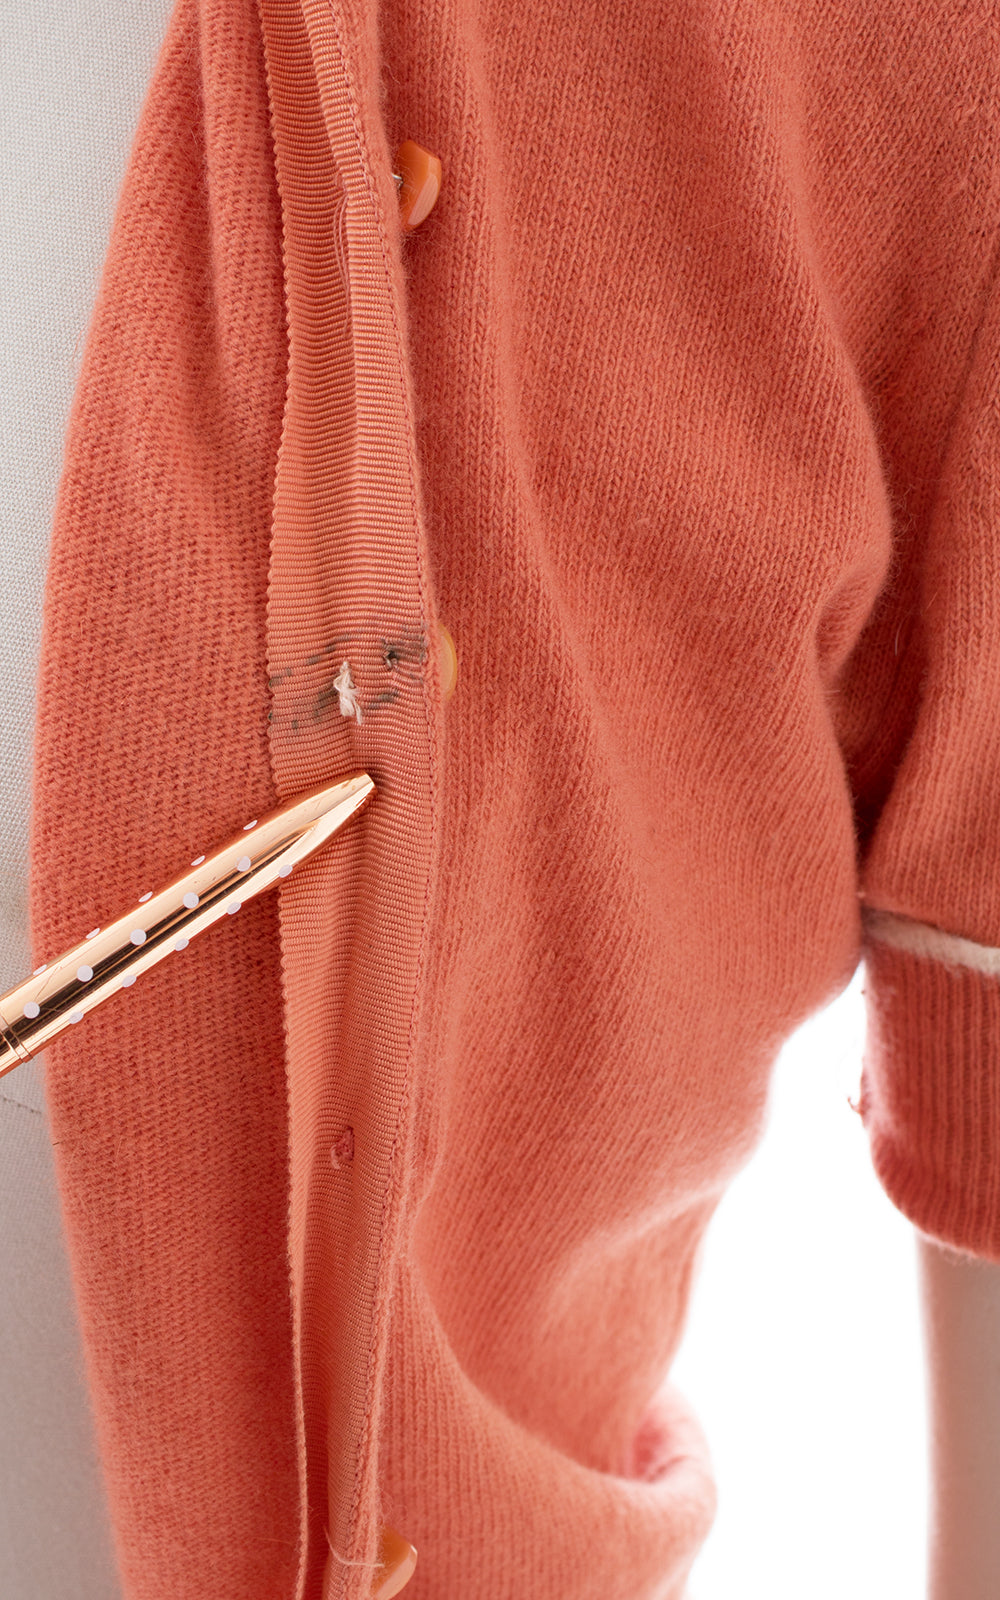 1950s Peach Wool & Angora Sweater To